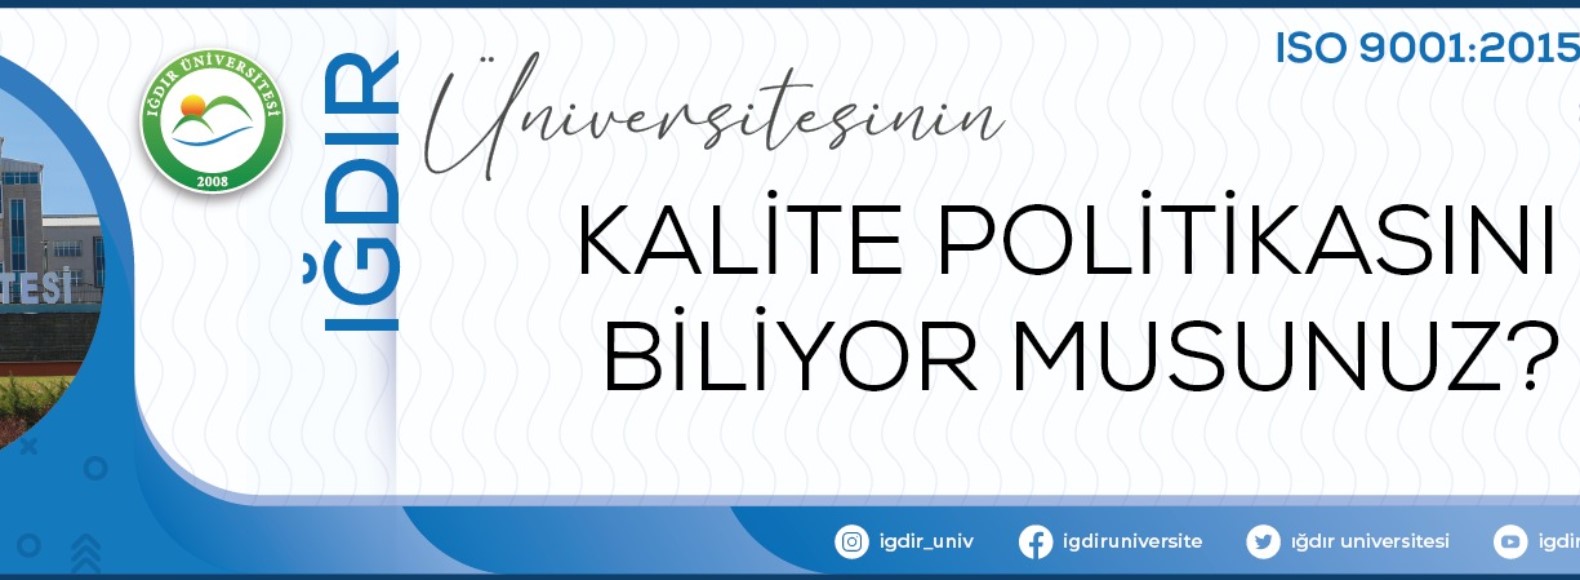 Iğdır Üniversitesi Kalite Politikası